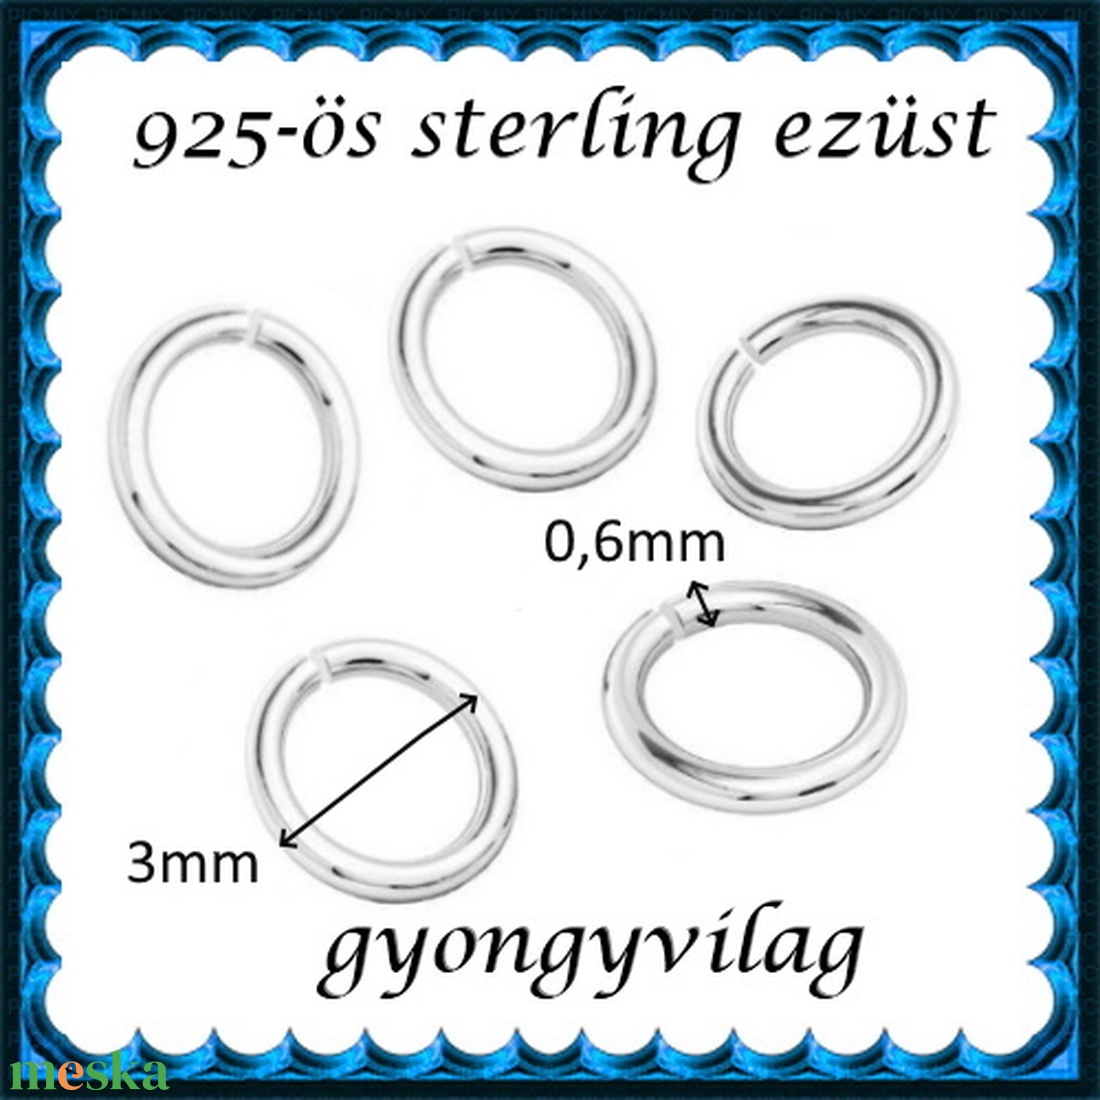 925-ös sterling ezüst ékszerkellék: karika nyitott ESZK NY 3x0,6mm 5db/csomag - gyöngy, ékszerkellék - egyéb alkatrész - Meska.hu